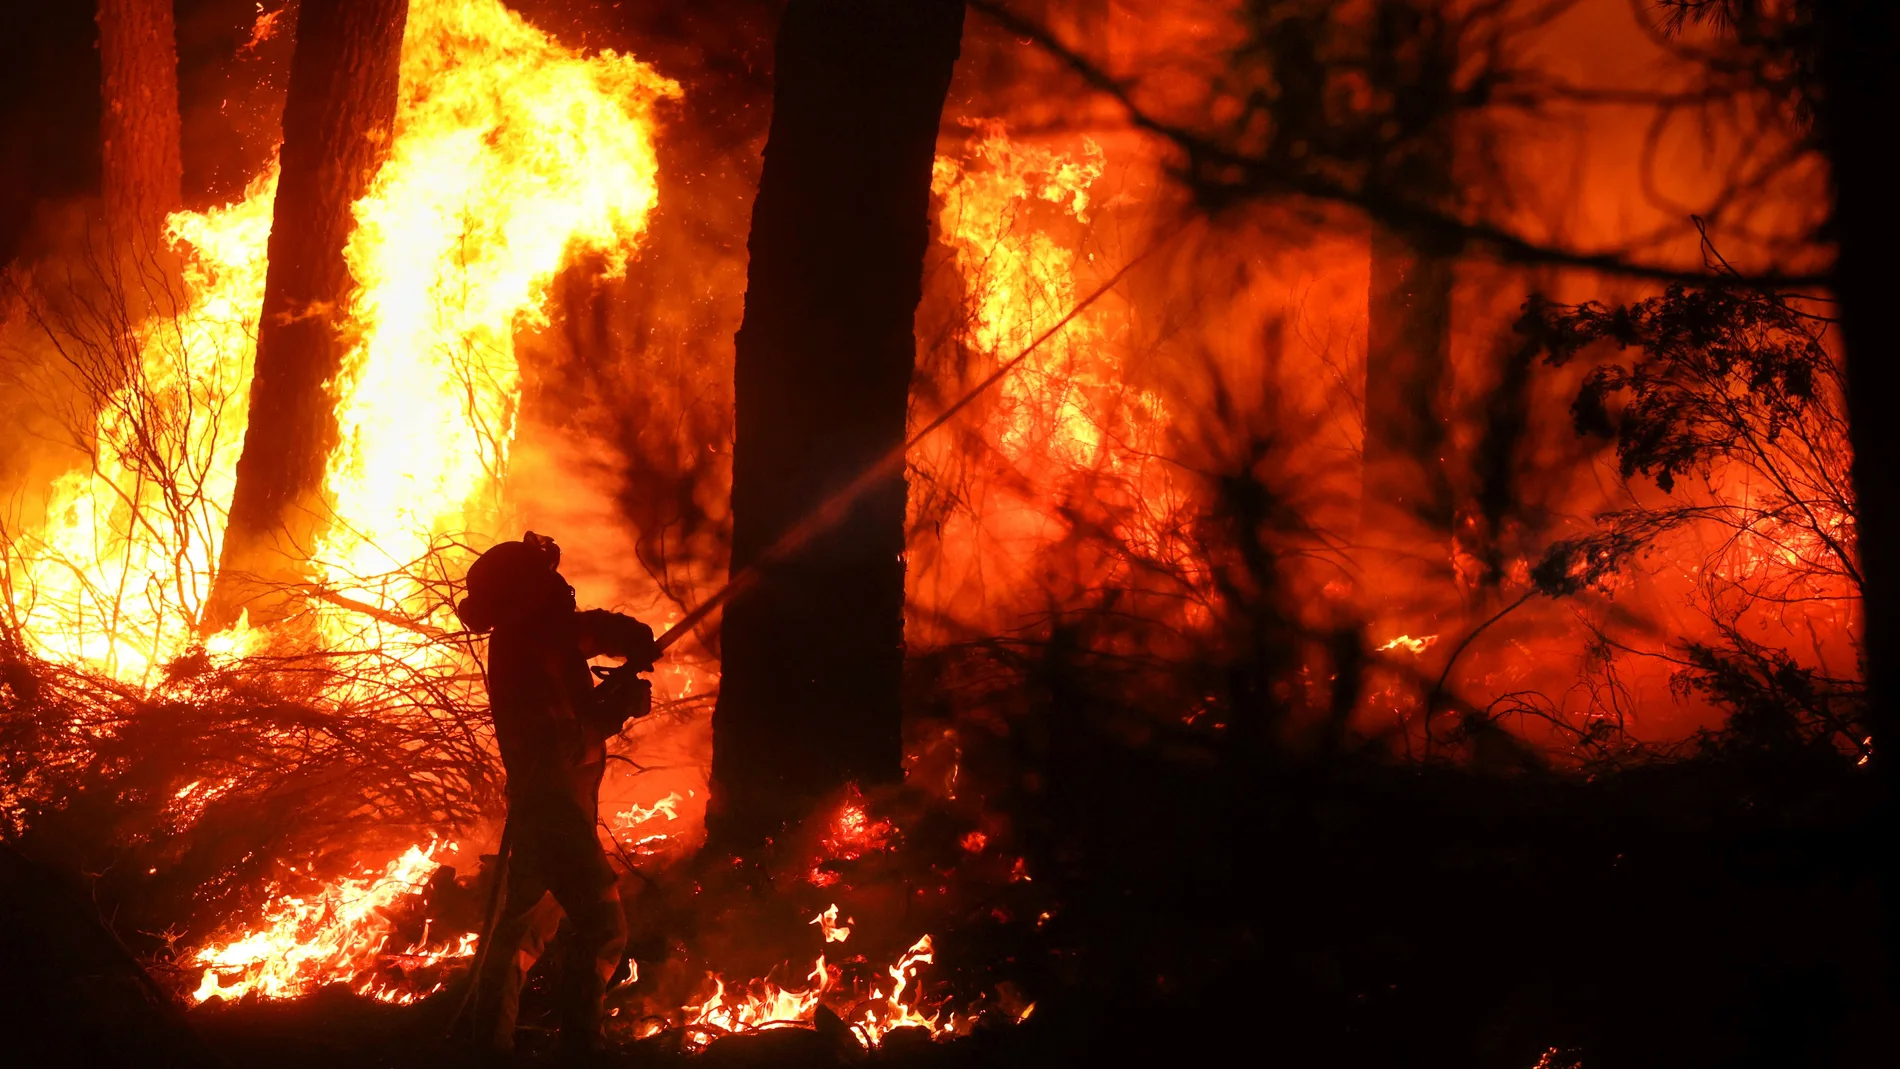 El incendio forestal se inició en el término de Serradilla del Arroyo (Salamanca) alrededor de las 16.30 horas. Durante toda la noche cuadrillas de bomberos están luchando contra el fuego